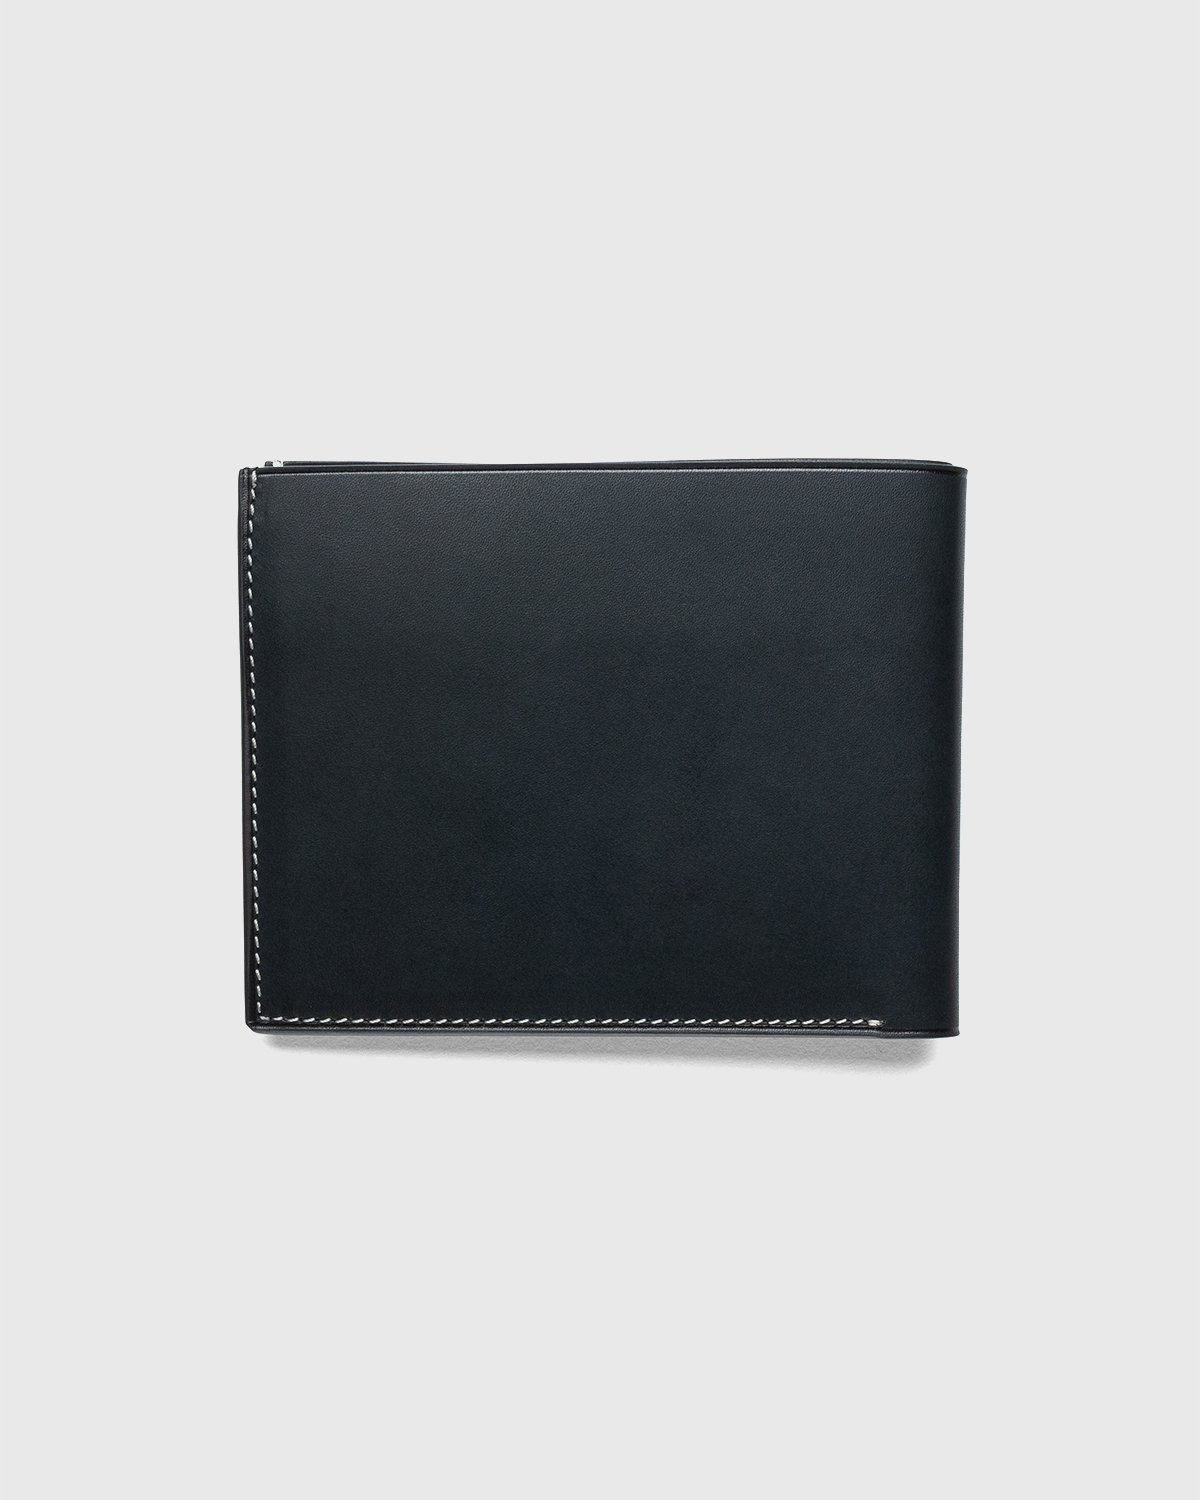 Jil Sander - Pocket Wallet Black - Accessories - Black - Image 2